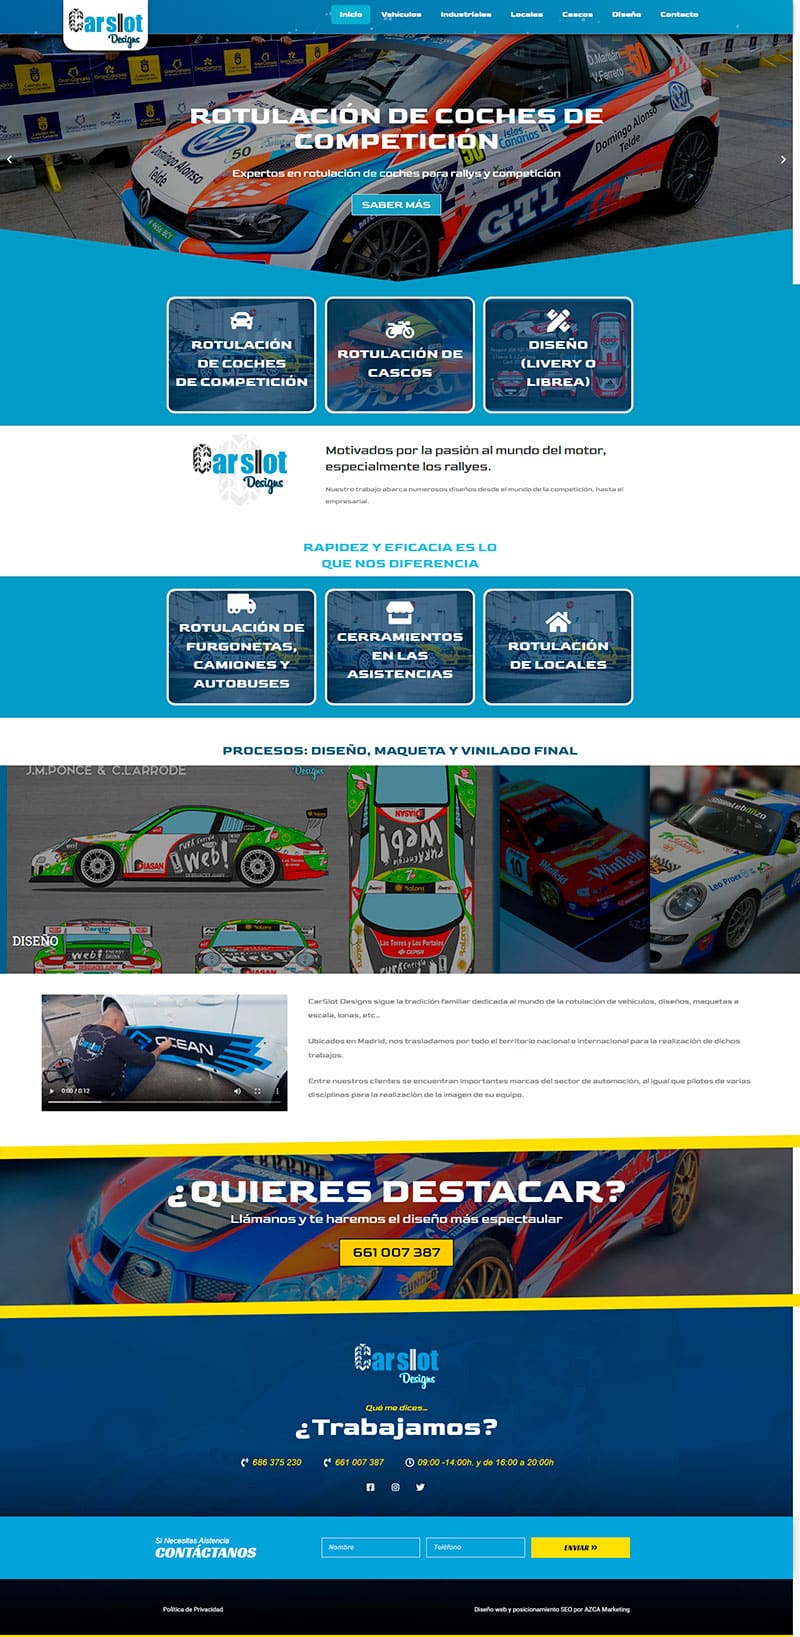 carslot designs rotulación de vehiculos de competición